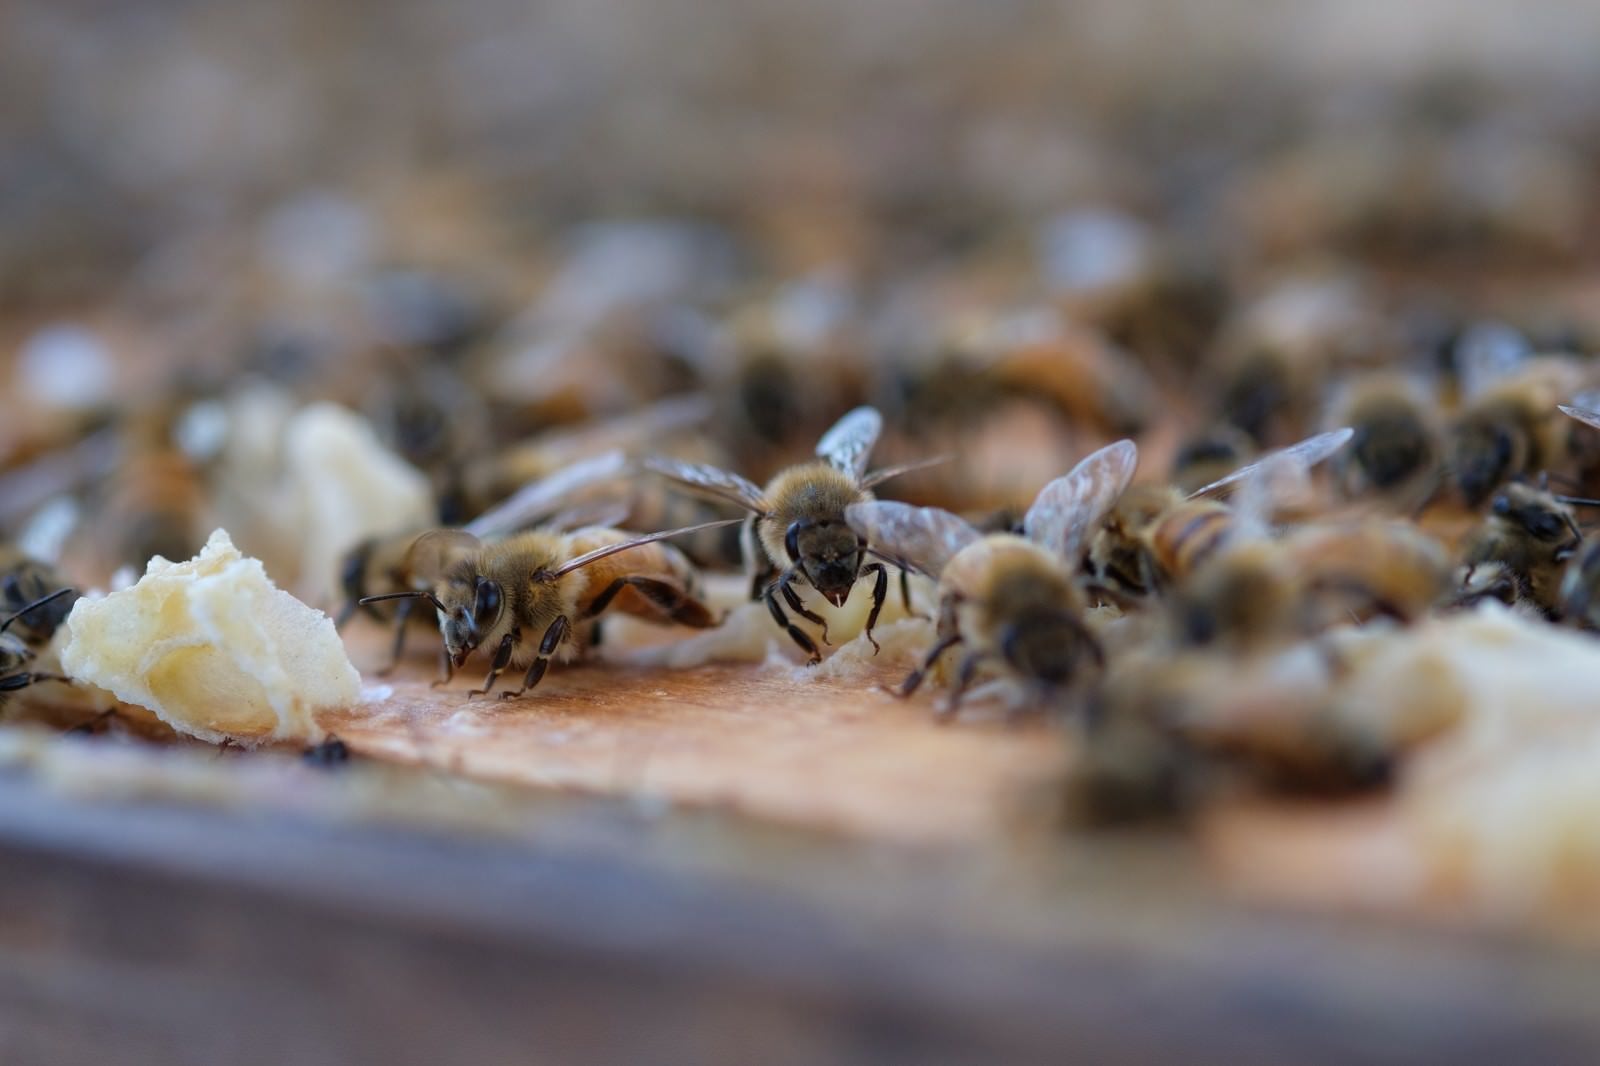 至る所に蜜蝋で巣を拡張しようとする働き蜂の無料写真素材 - ID.21400